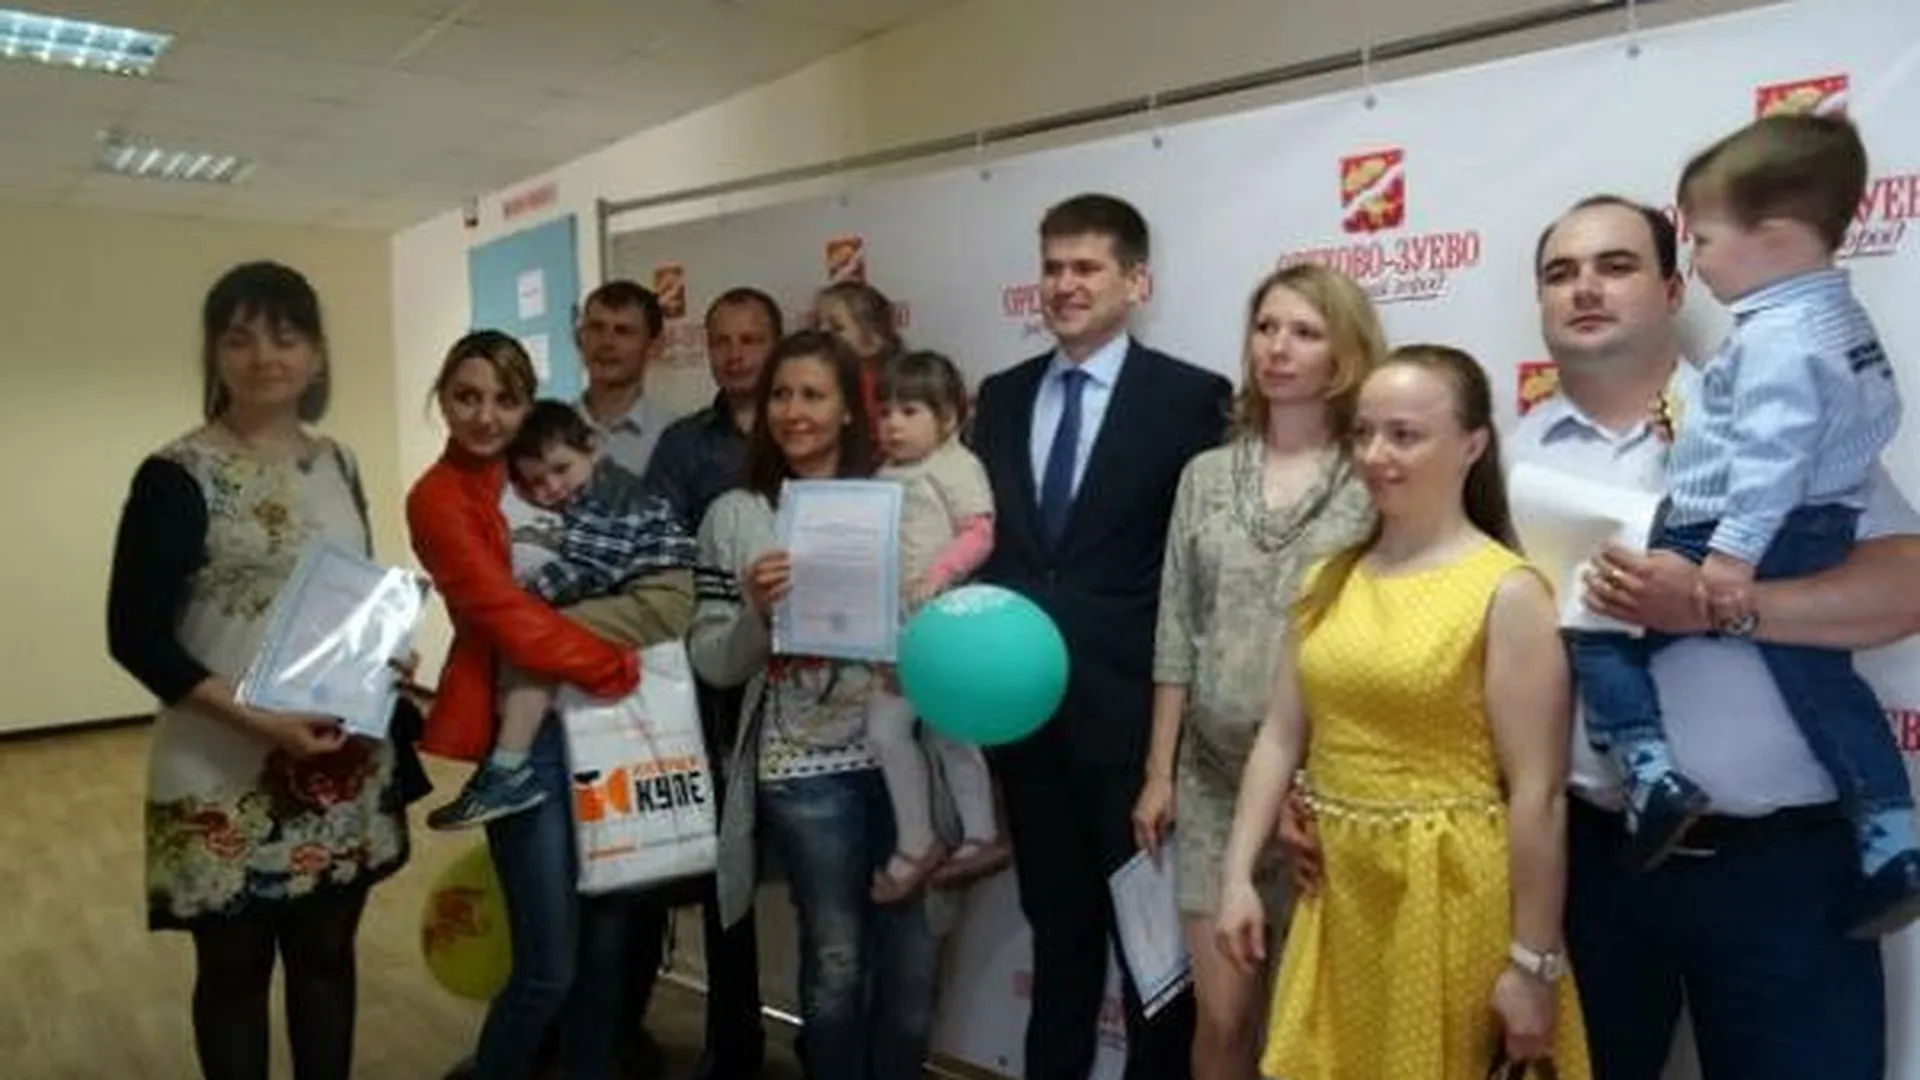 Пять молодых семей в Орехово-Зуево получили субсидии на жилье